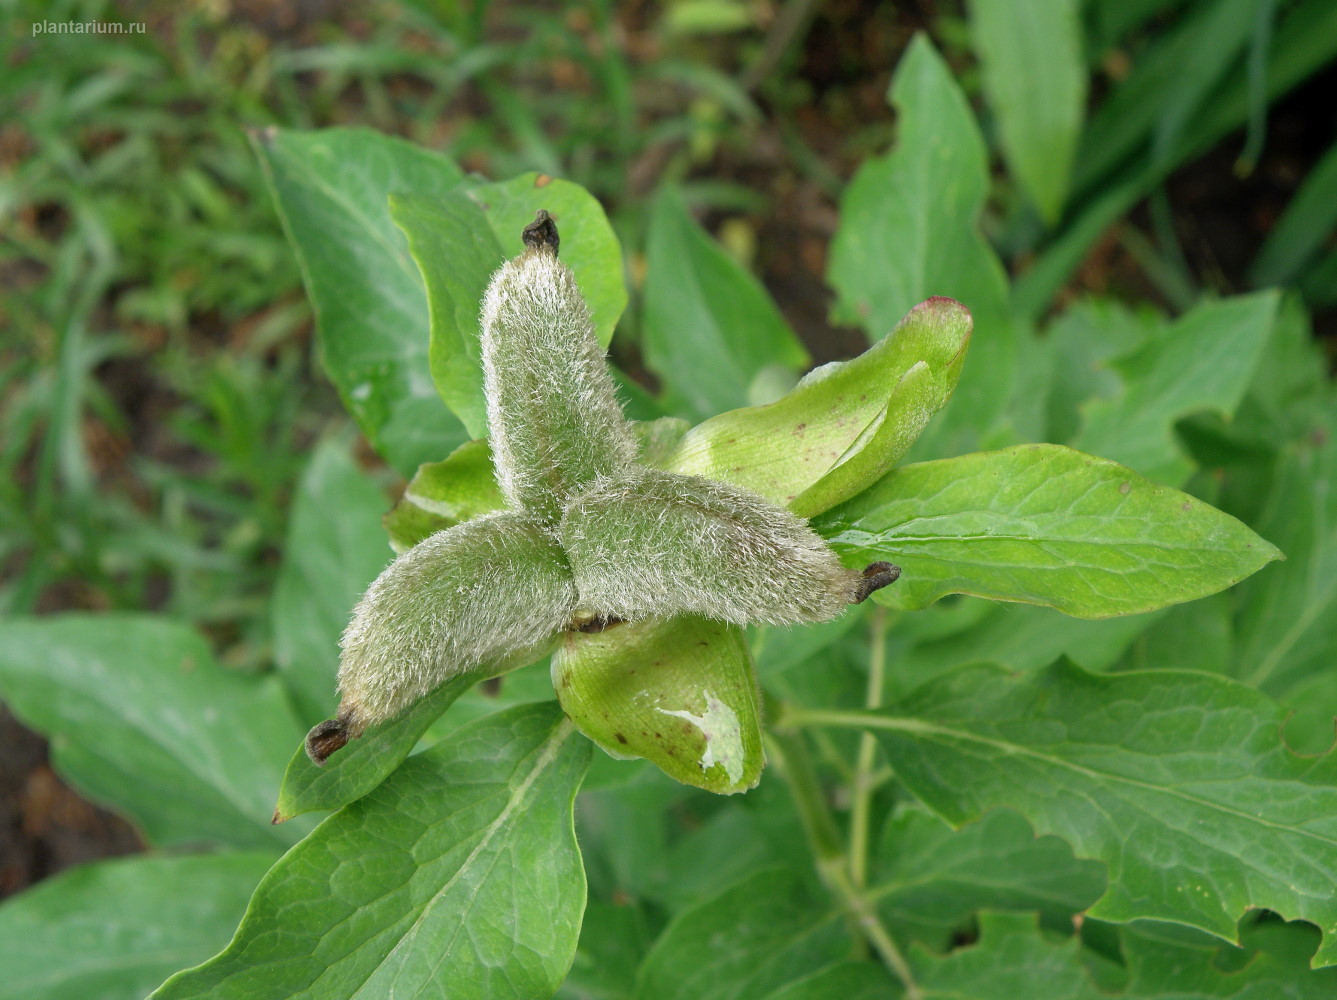 Image of Paeonia arietina specimen.